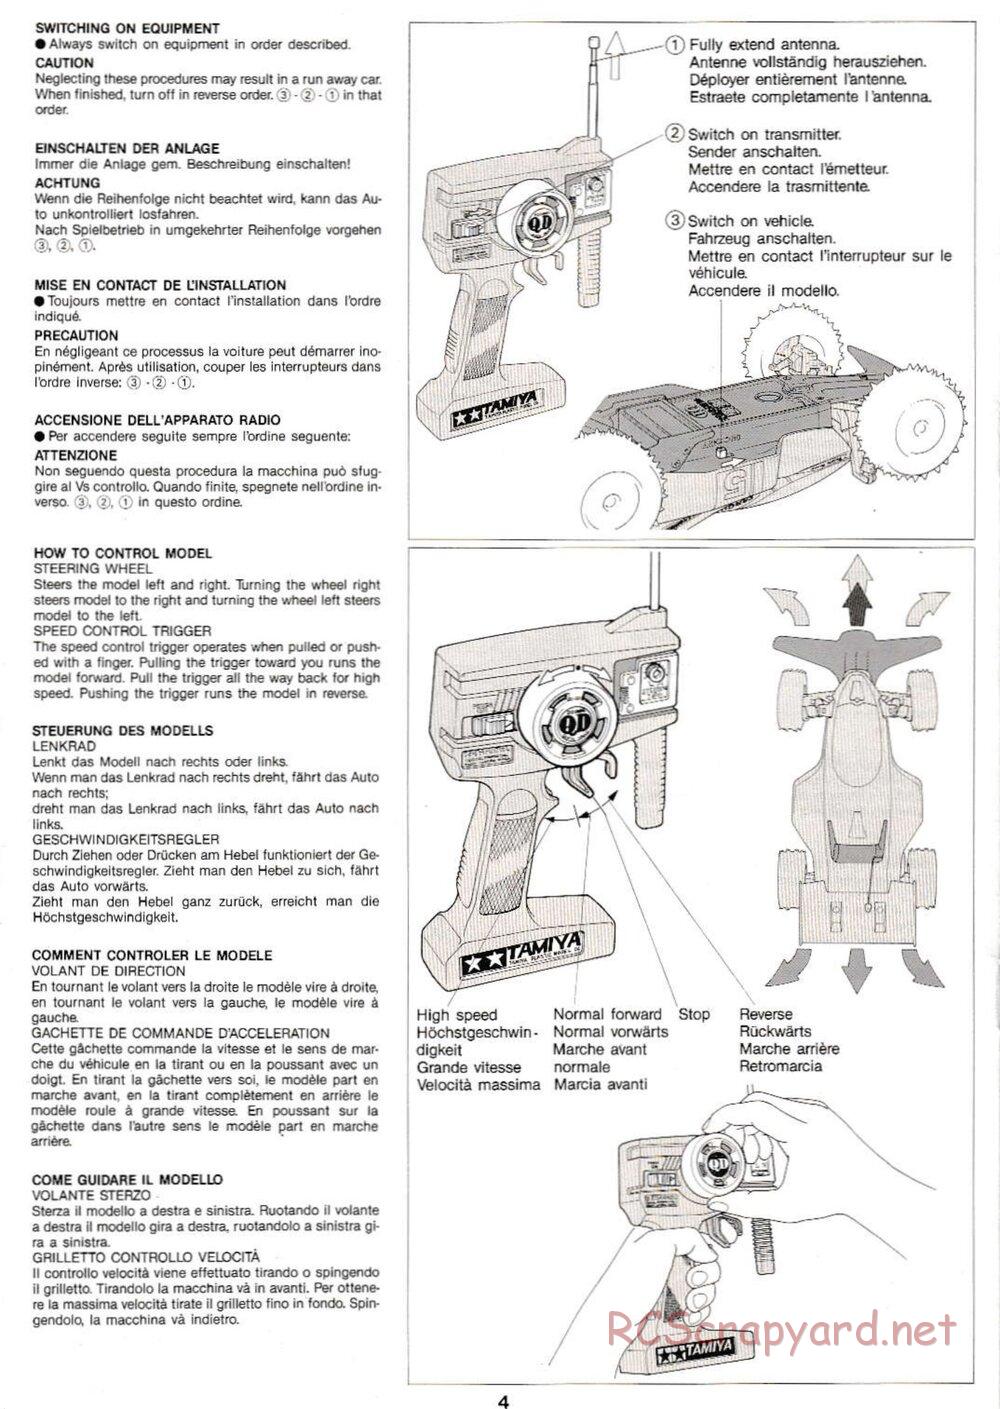 Tamiya - Thunder Shot QD Chassis - Manual - Page 4